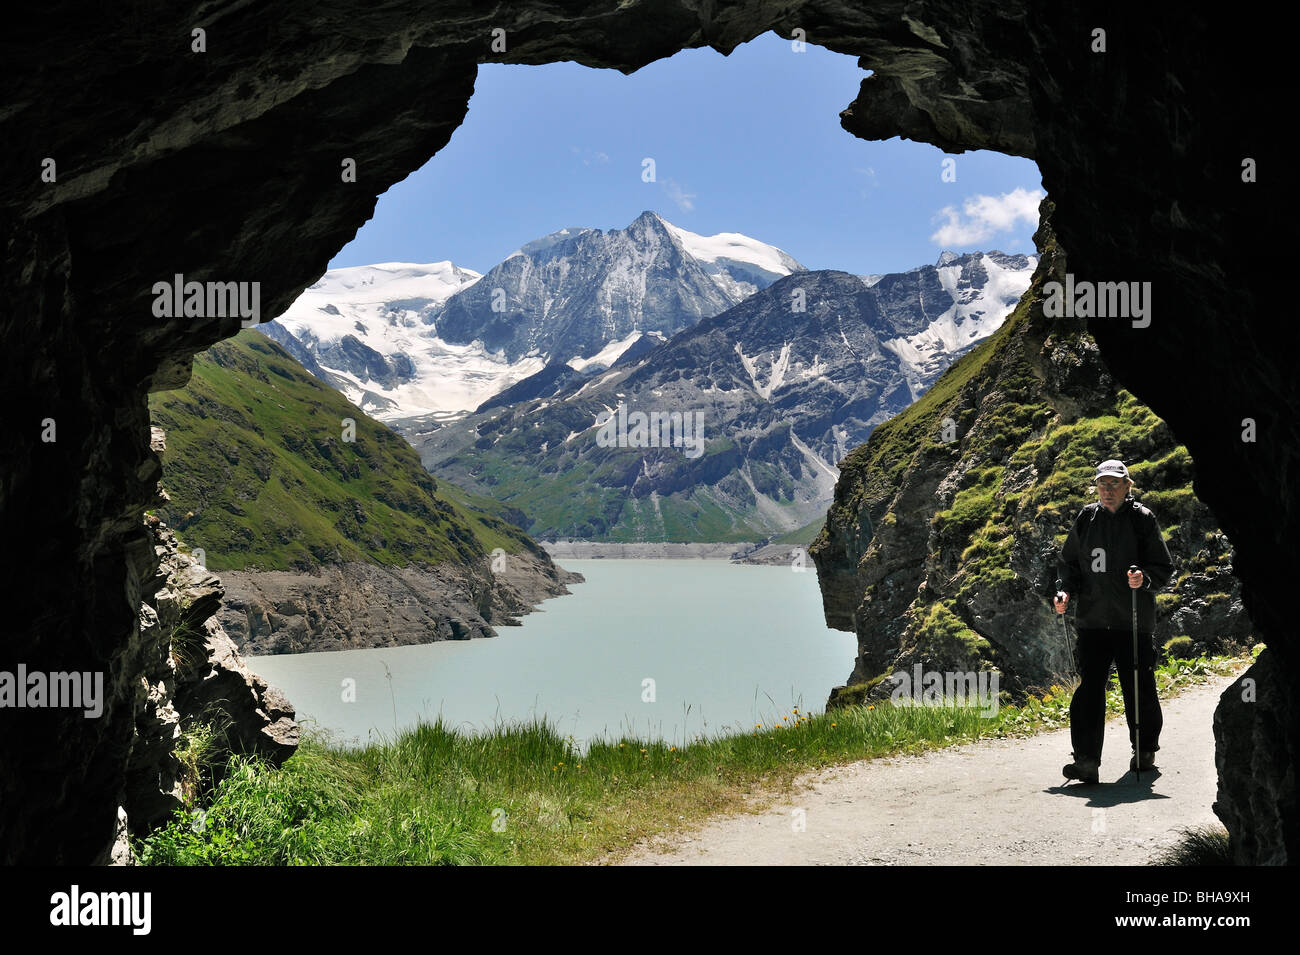 Balades touristiques le long de la grotte à travers le Lac des Dix, formé par le barrage de la Grande Dixence en Valais, Alpes Suisses, Suisse Banque D'Images